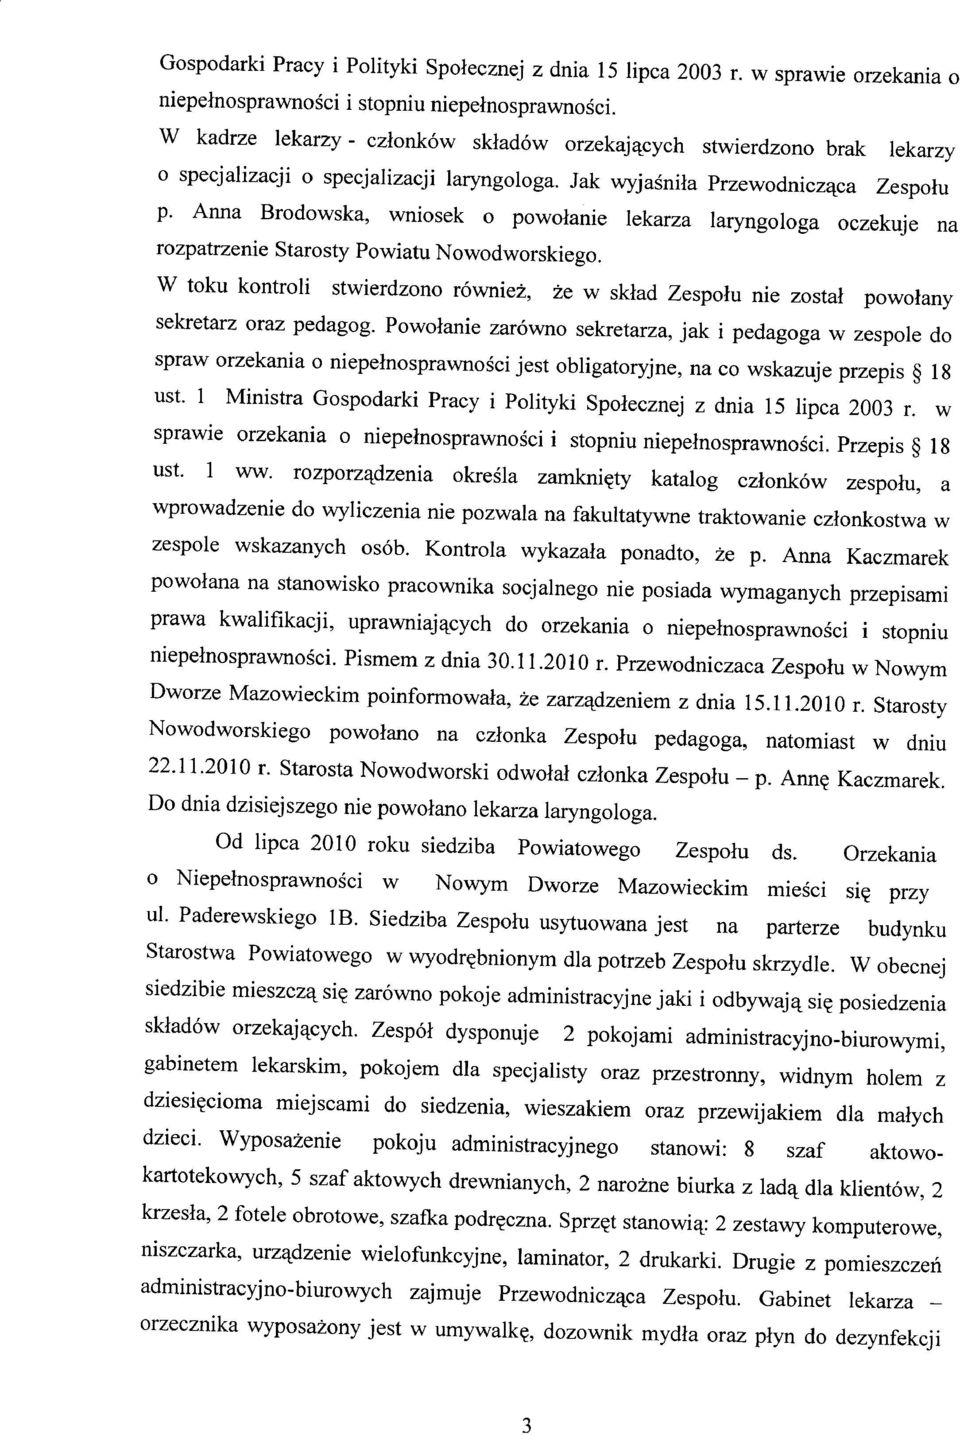 Anna Brodowska, wniosek o powołanie lekarza laryngologa oczekuje na rozpatrzenie Starosty Powiatu Nowodworskiego.